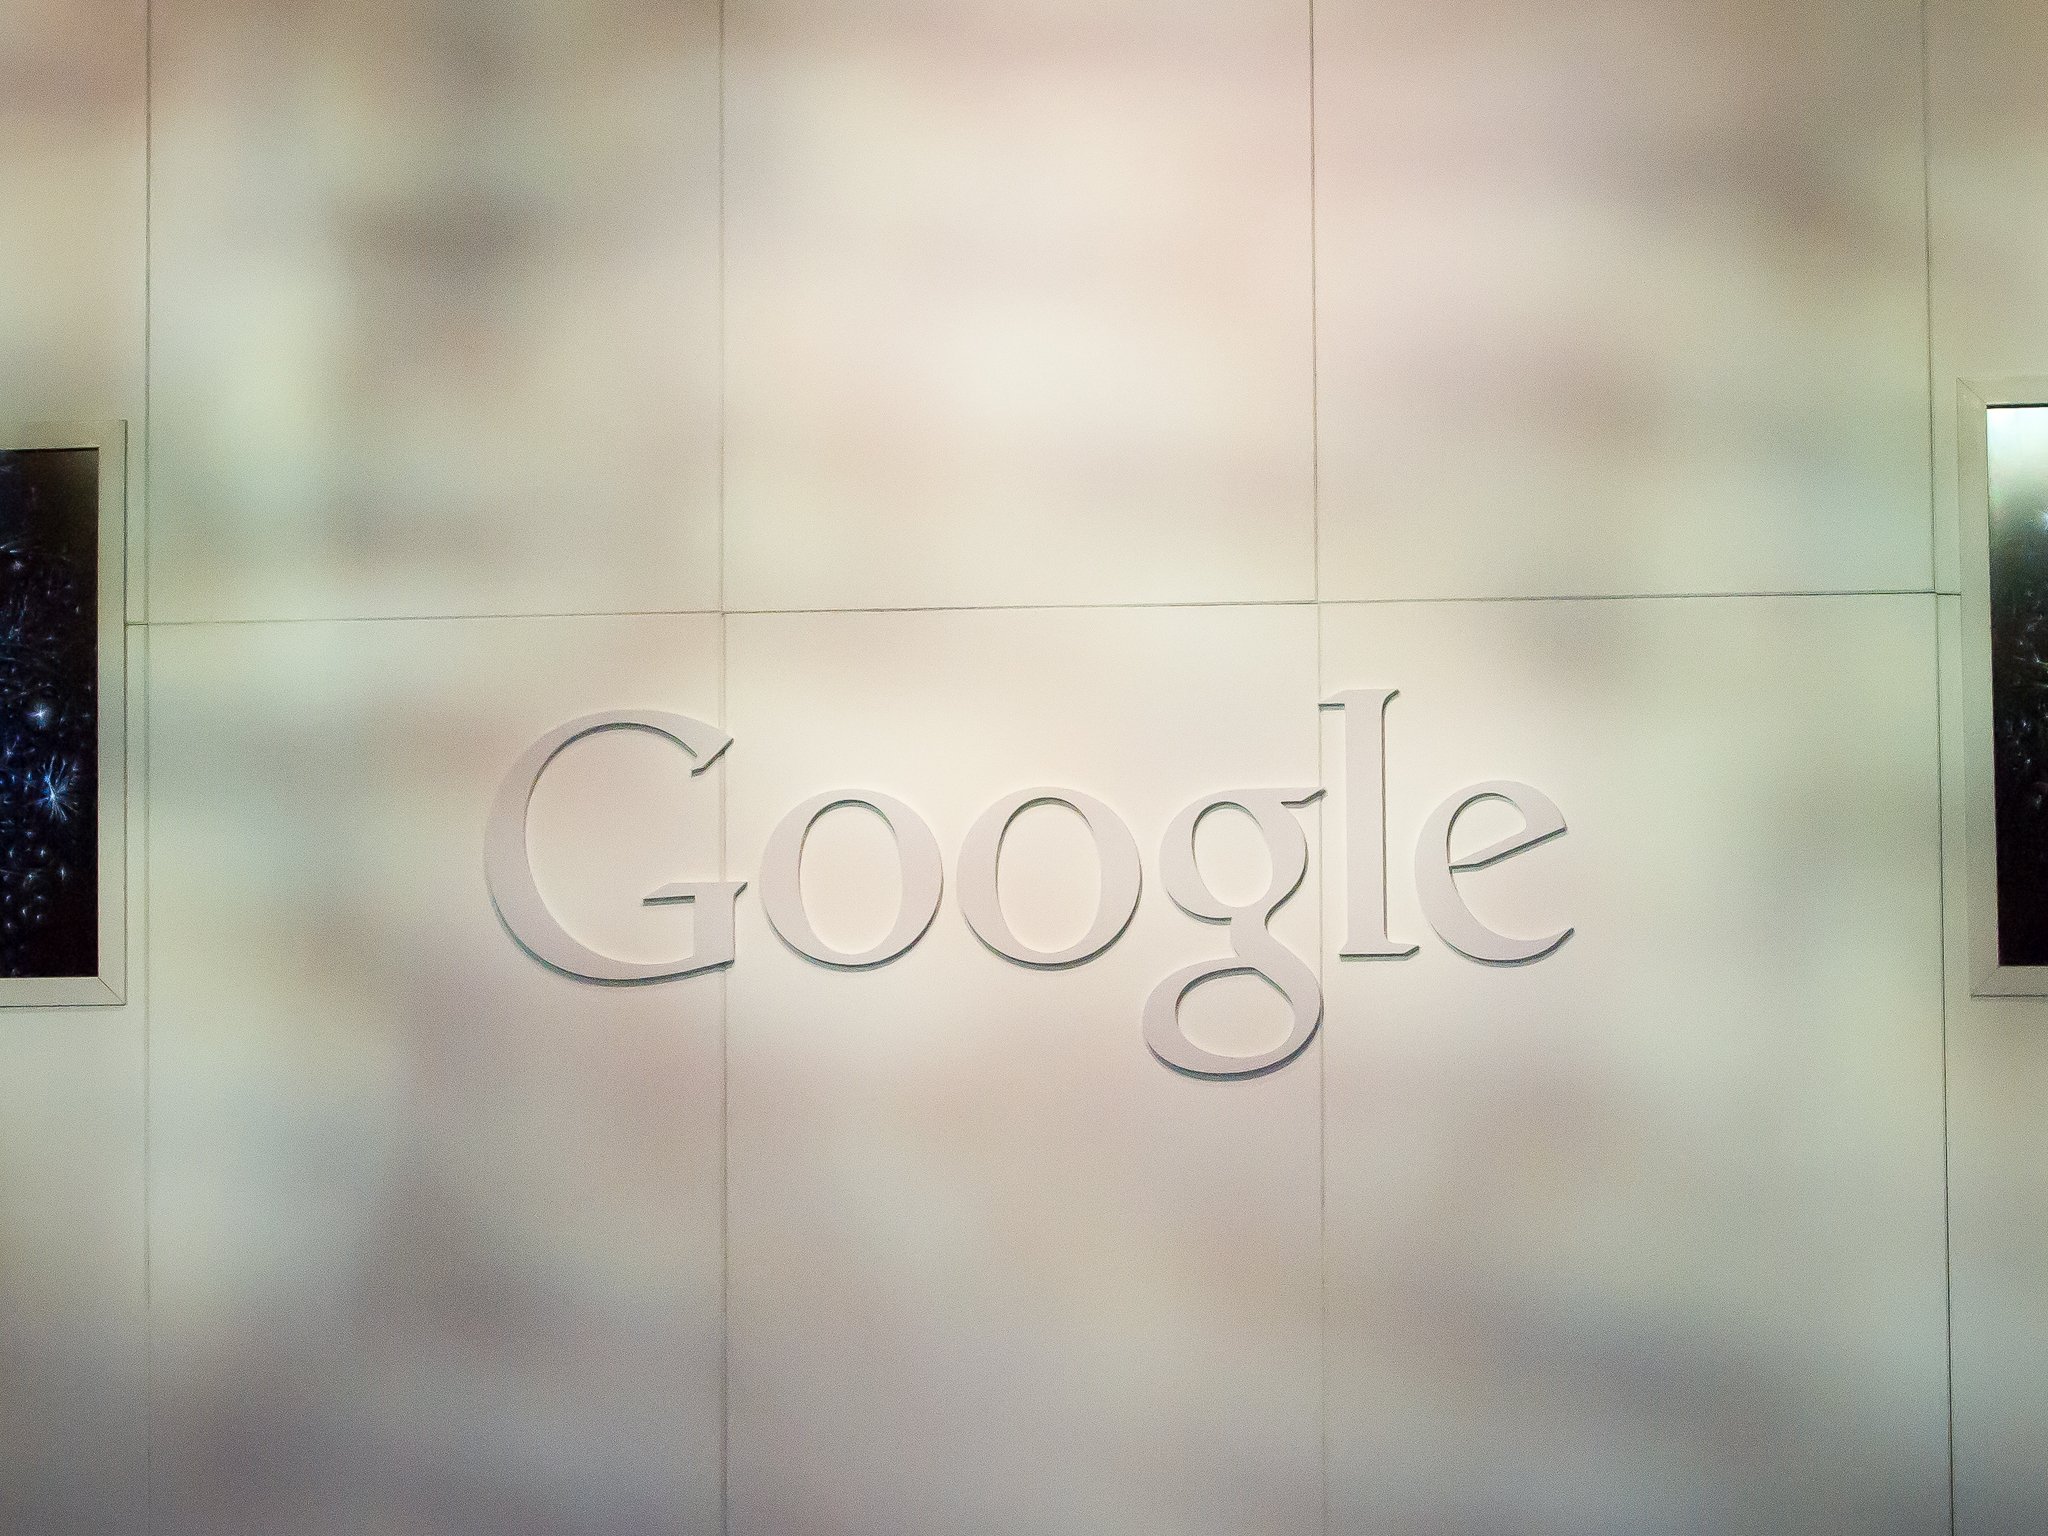 Judge dismisses antitrust case against Google over bundled apps and services